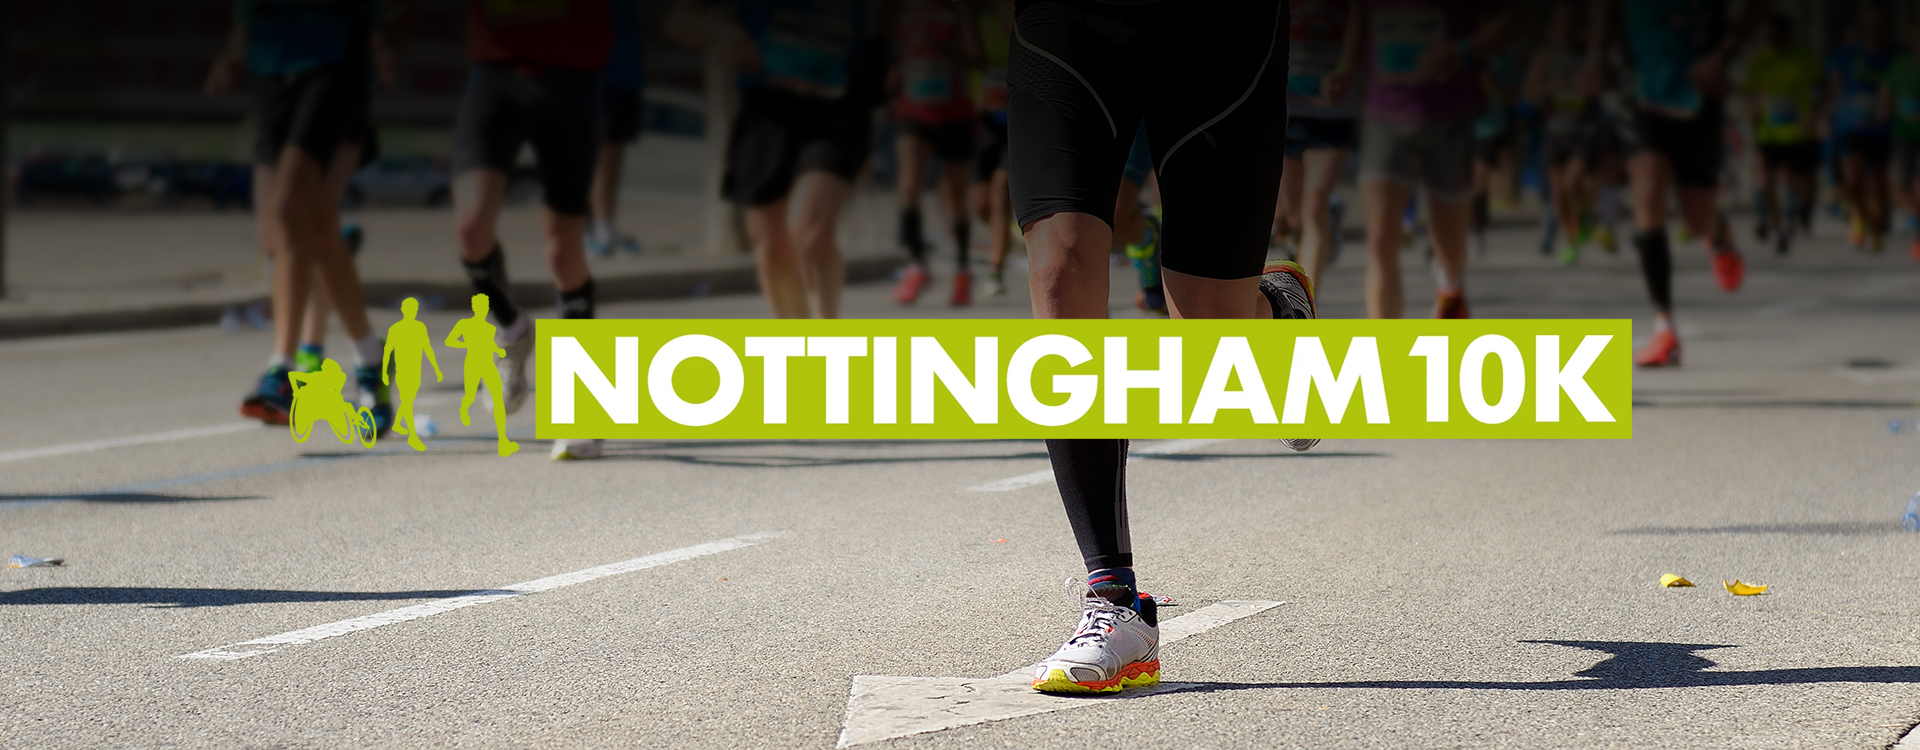 Nottingham 10K Run